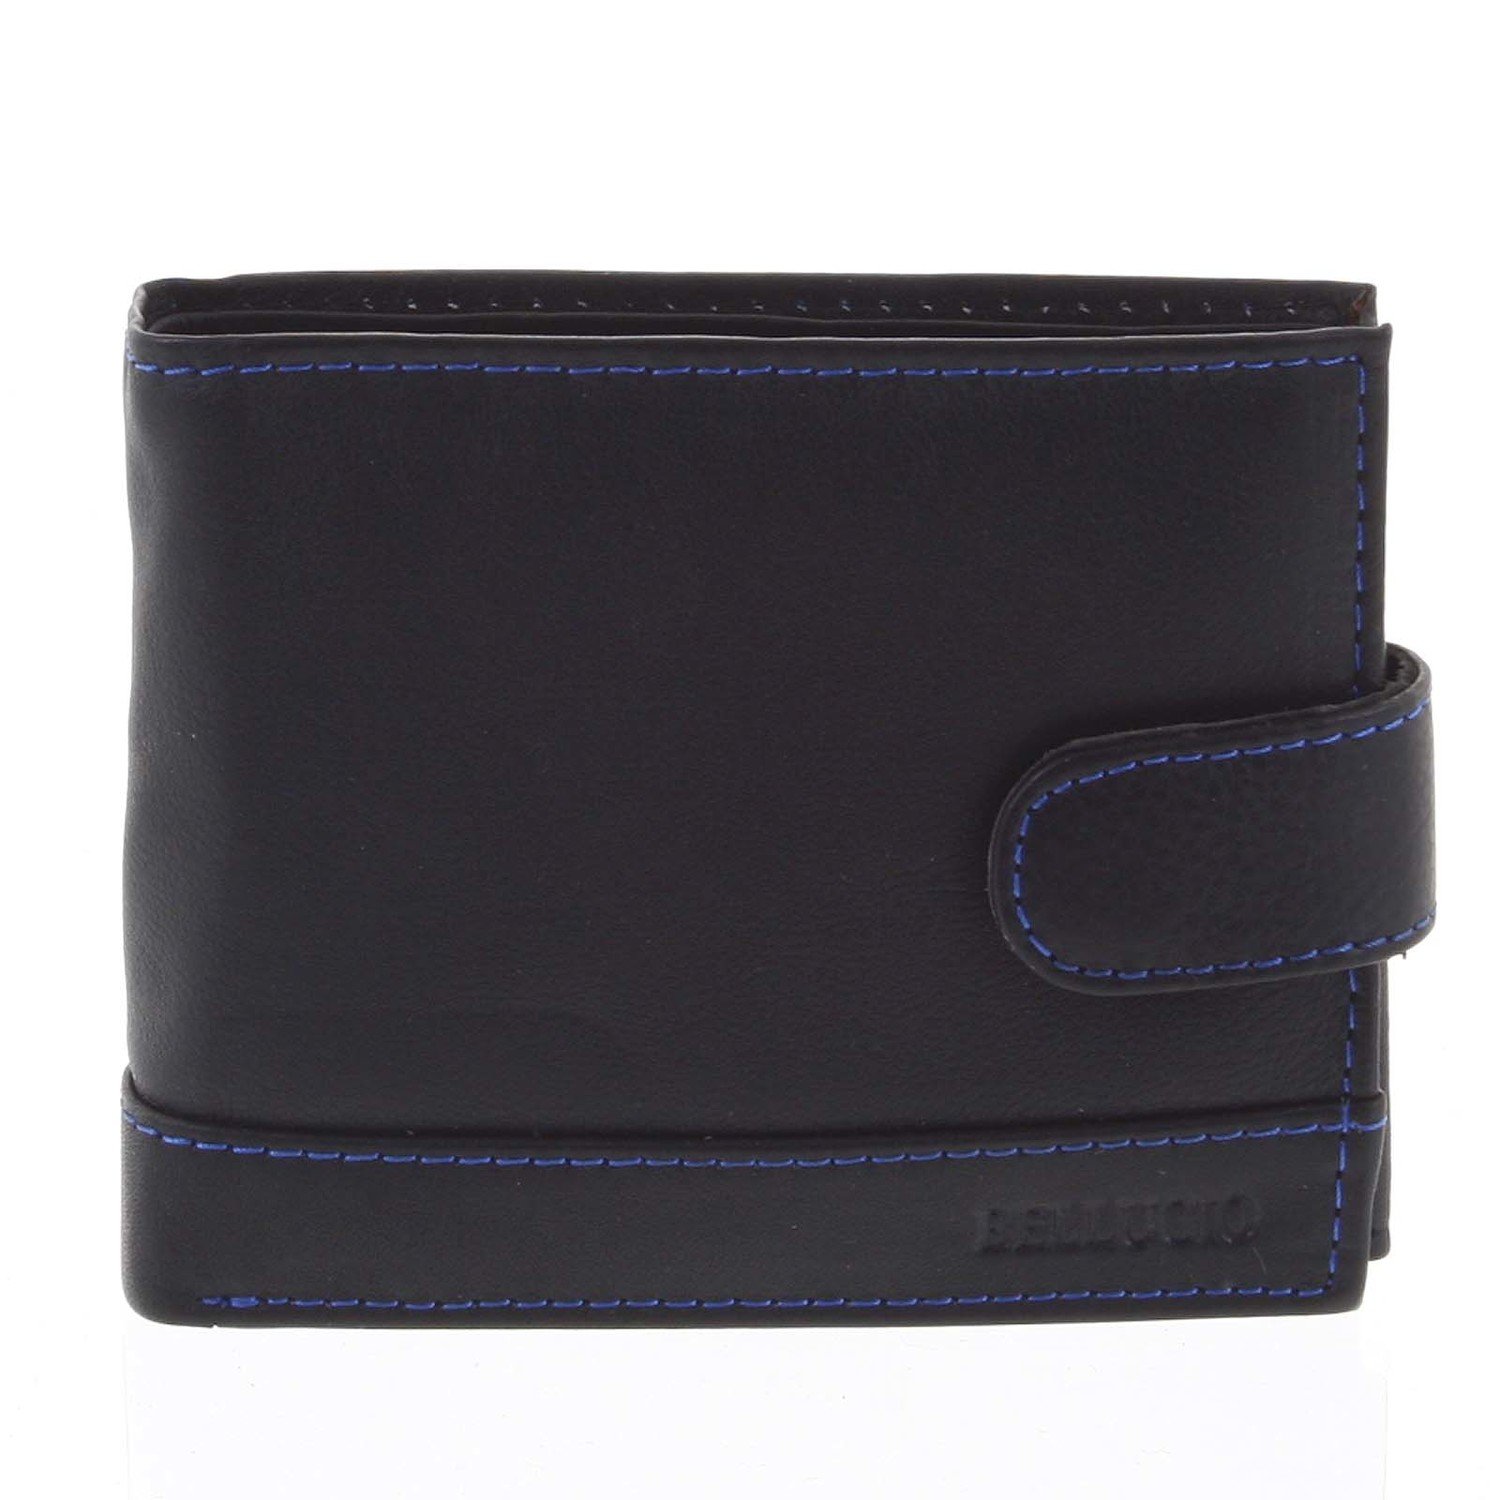 Pánská kožená peněženka černá - Bellugio Brys černá